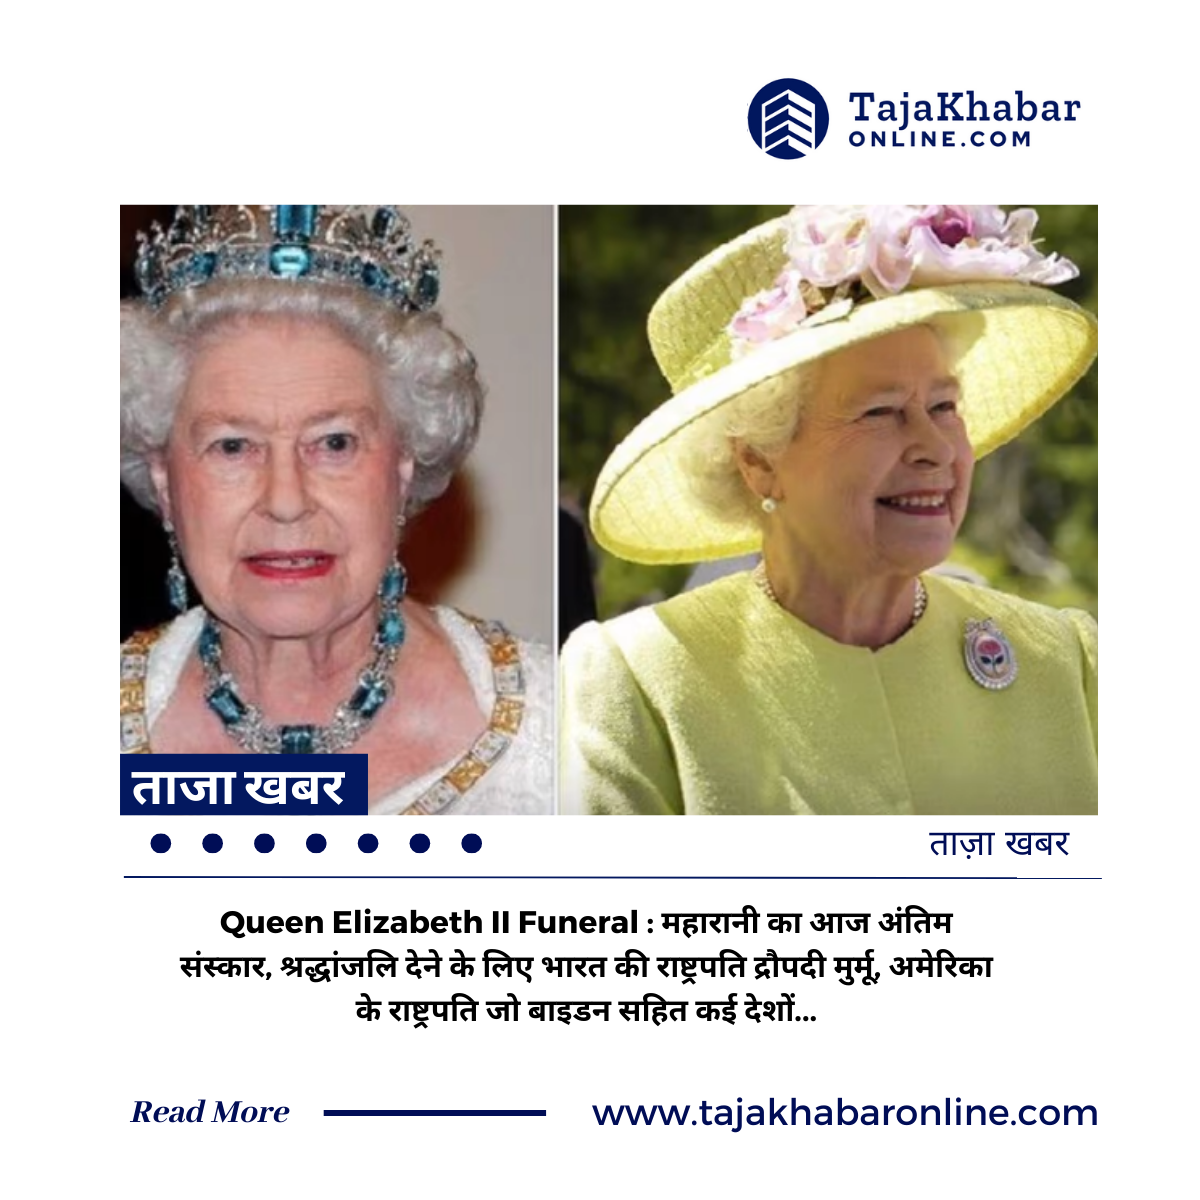 Queen Elizabeth II Funeral: